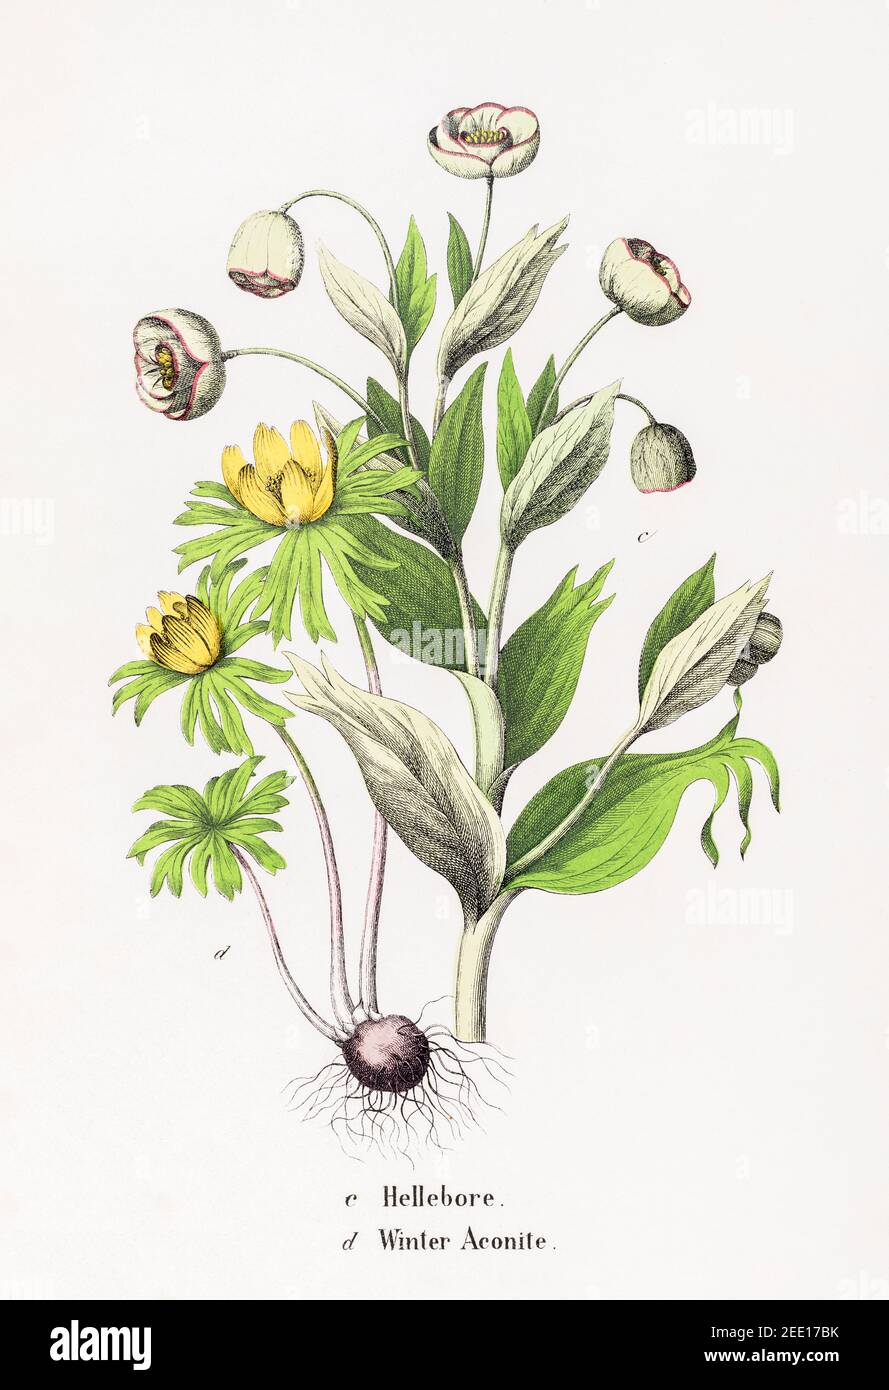 Illustration botanique victorienne du XIXe siècle restaurée numériquement de l'hellebore et de l'Aconite d'hiver / Eranthis hyemalis. Voir les remarques. Banque D'Images